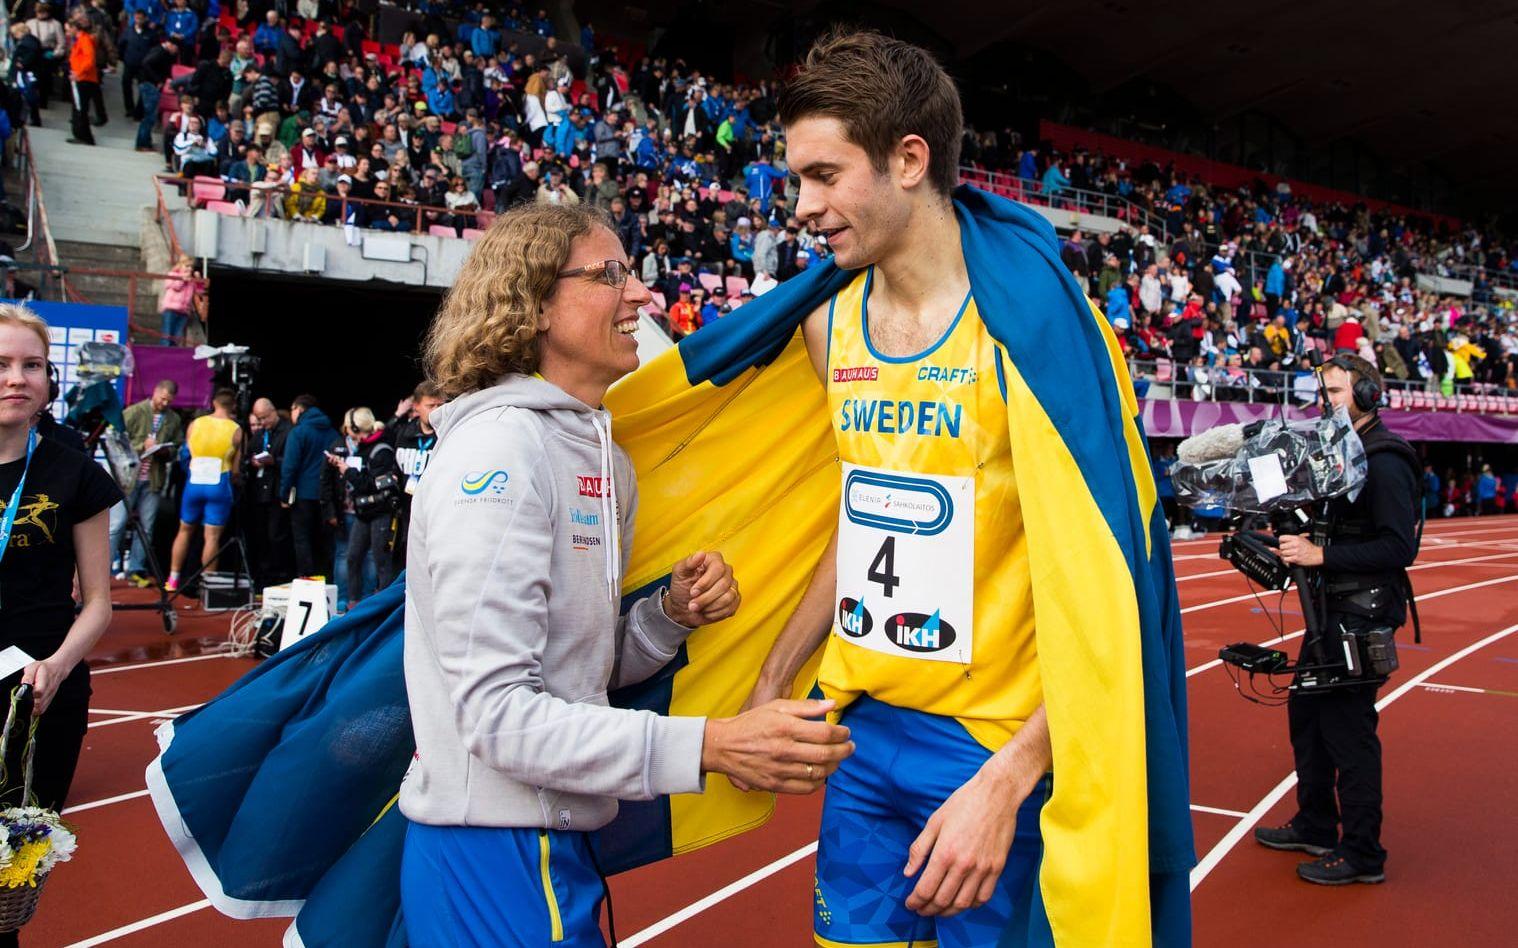 Johan Rogestedt gratuleras av förbundskapten Karin Torneklint efter segern på 1 500 meter. Bild: Andreas L Eriksson